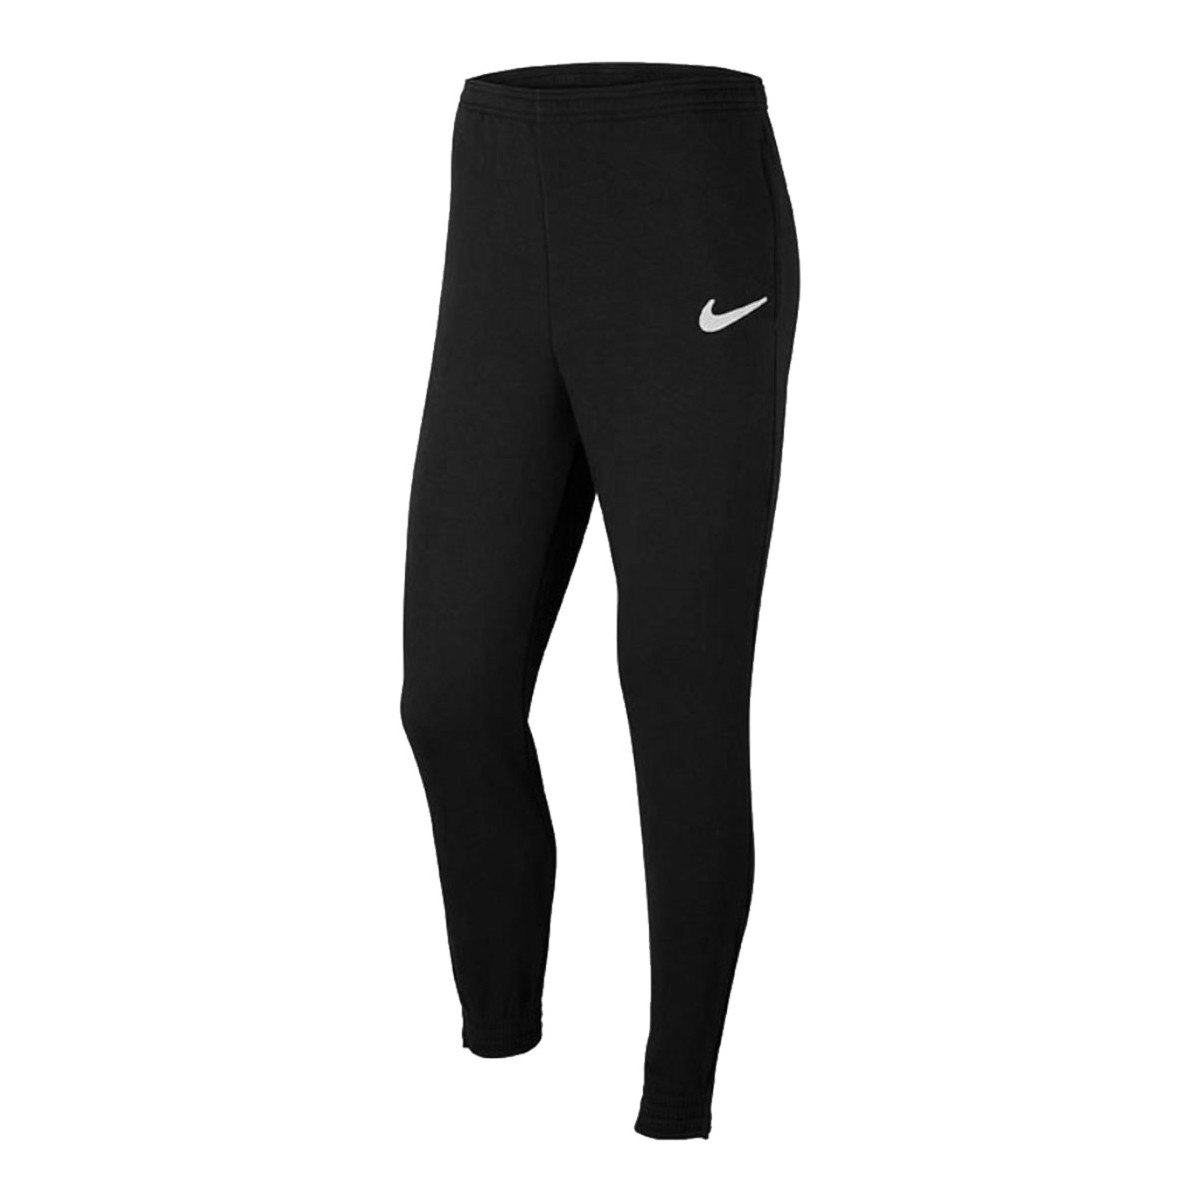 Φόρμες Nike Juniior Park 20 Fleece Pants